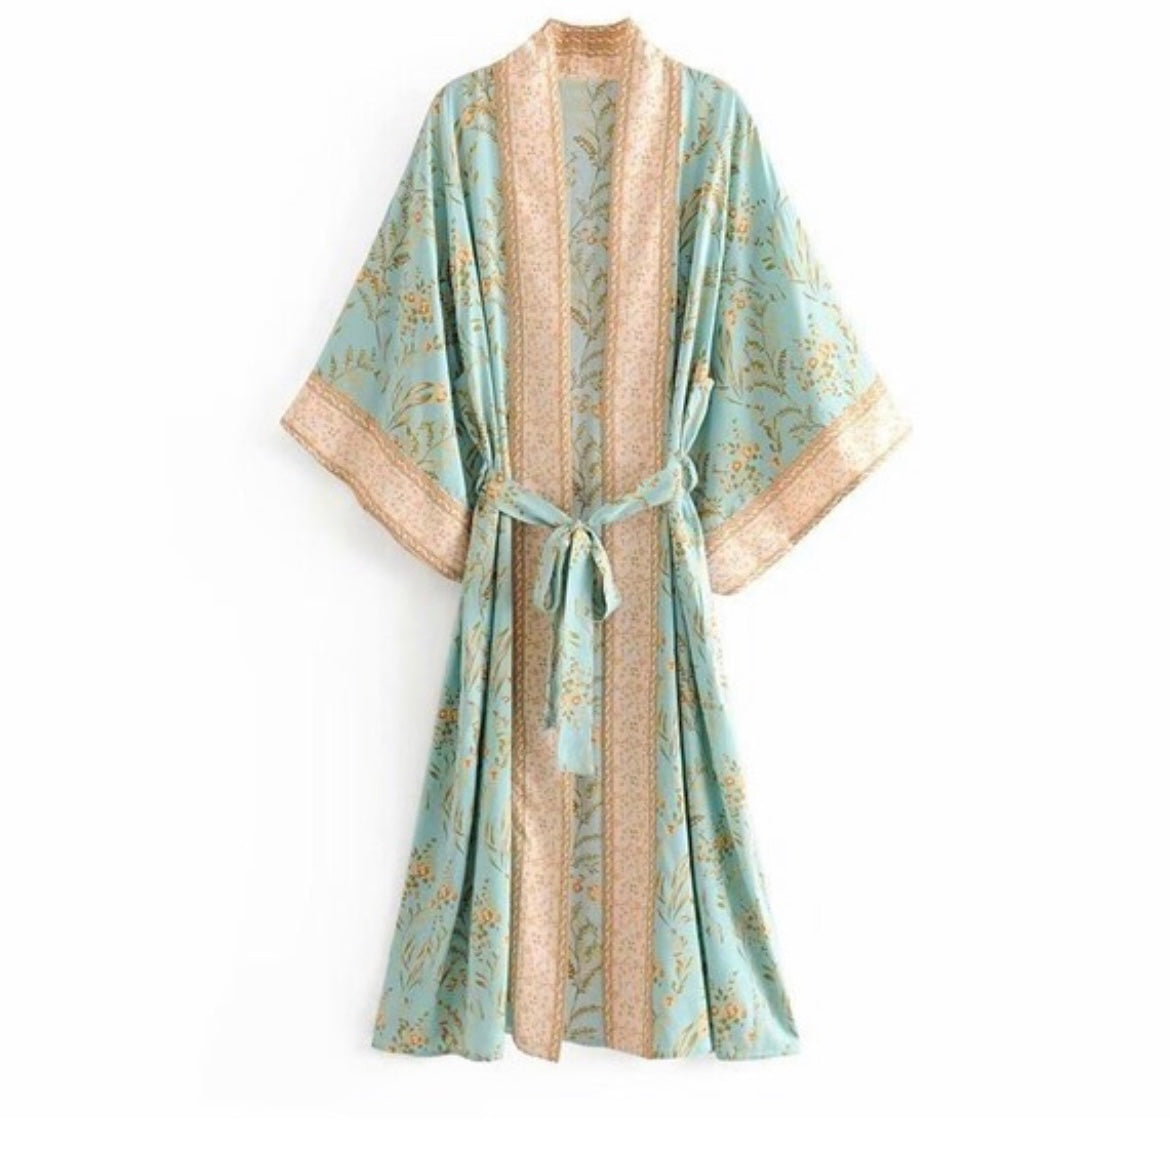 Kimono - Japanese Inspired Kimono